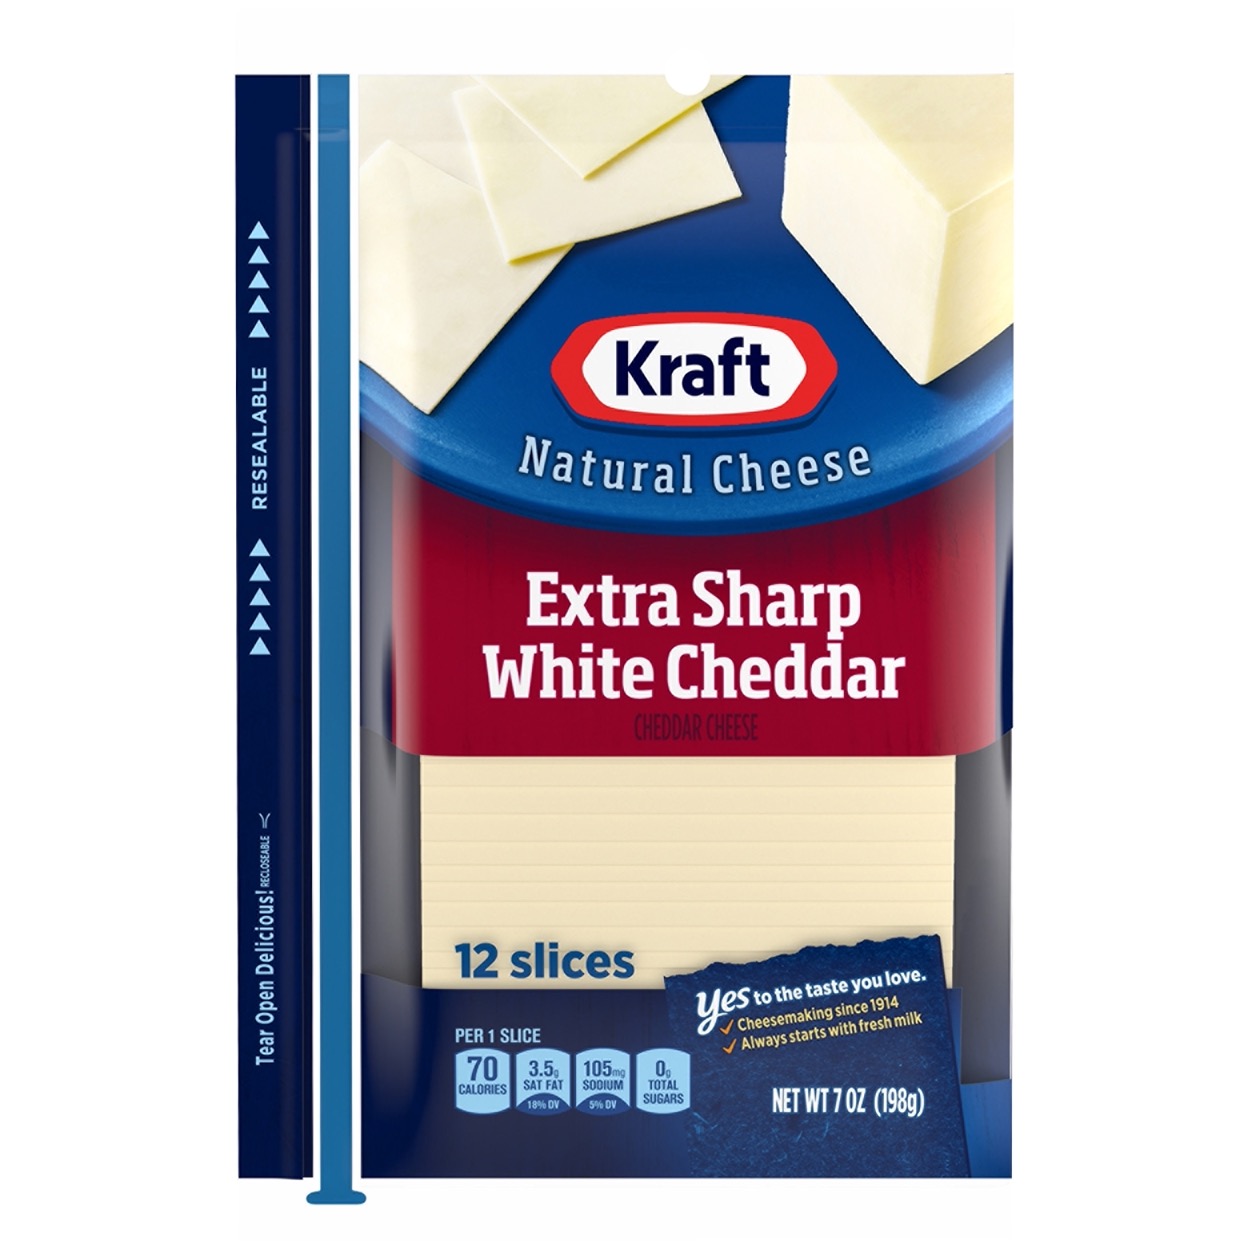 Extra Sharp White